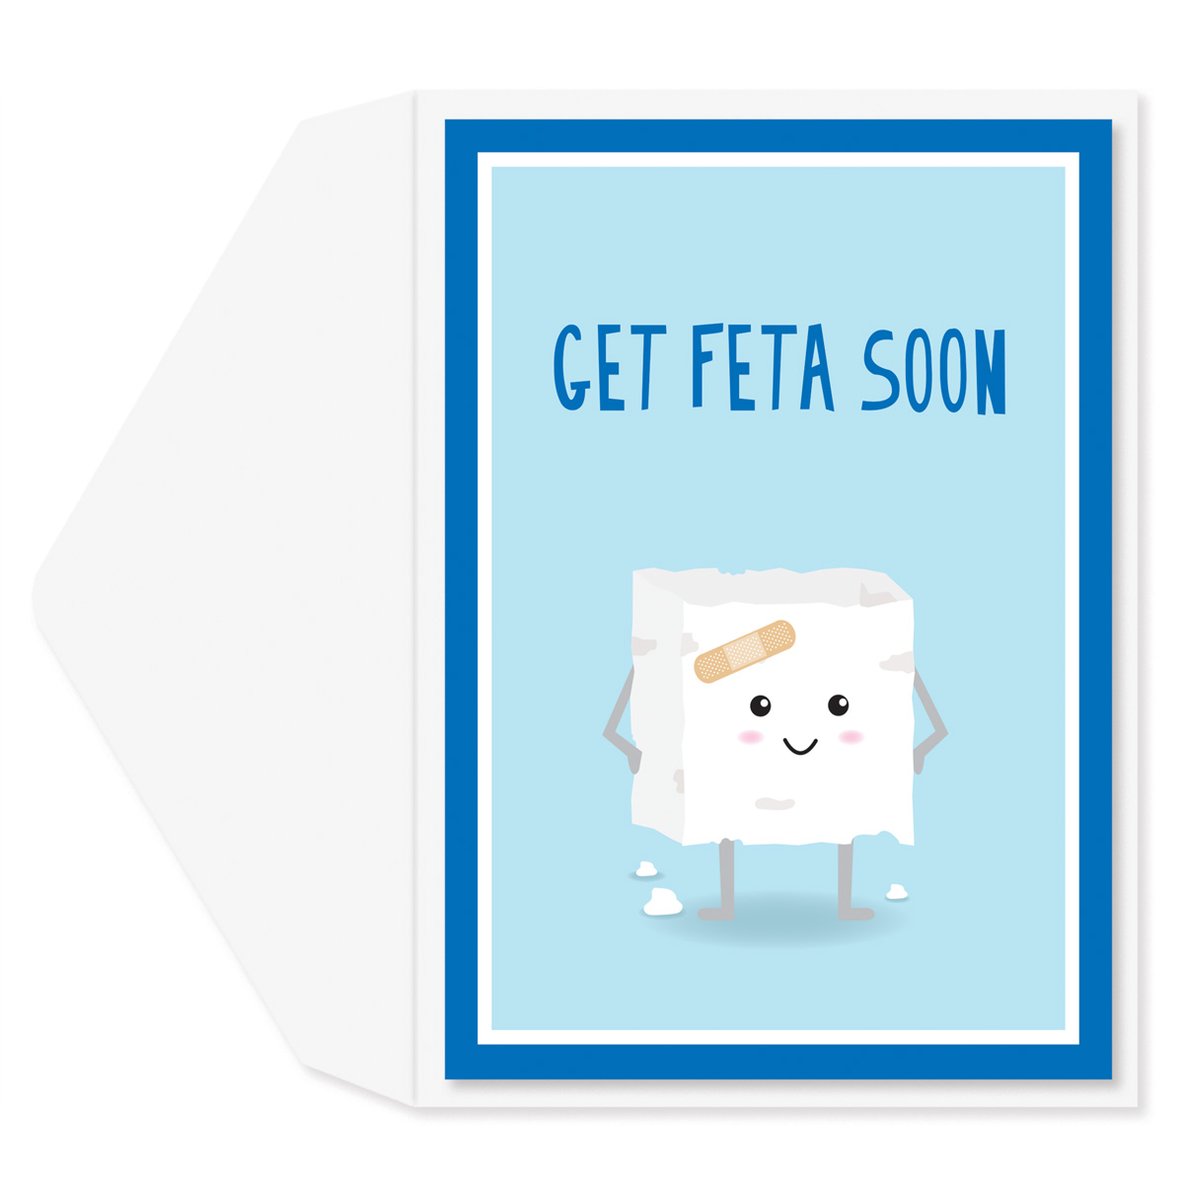 Get Feta Soon